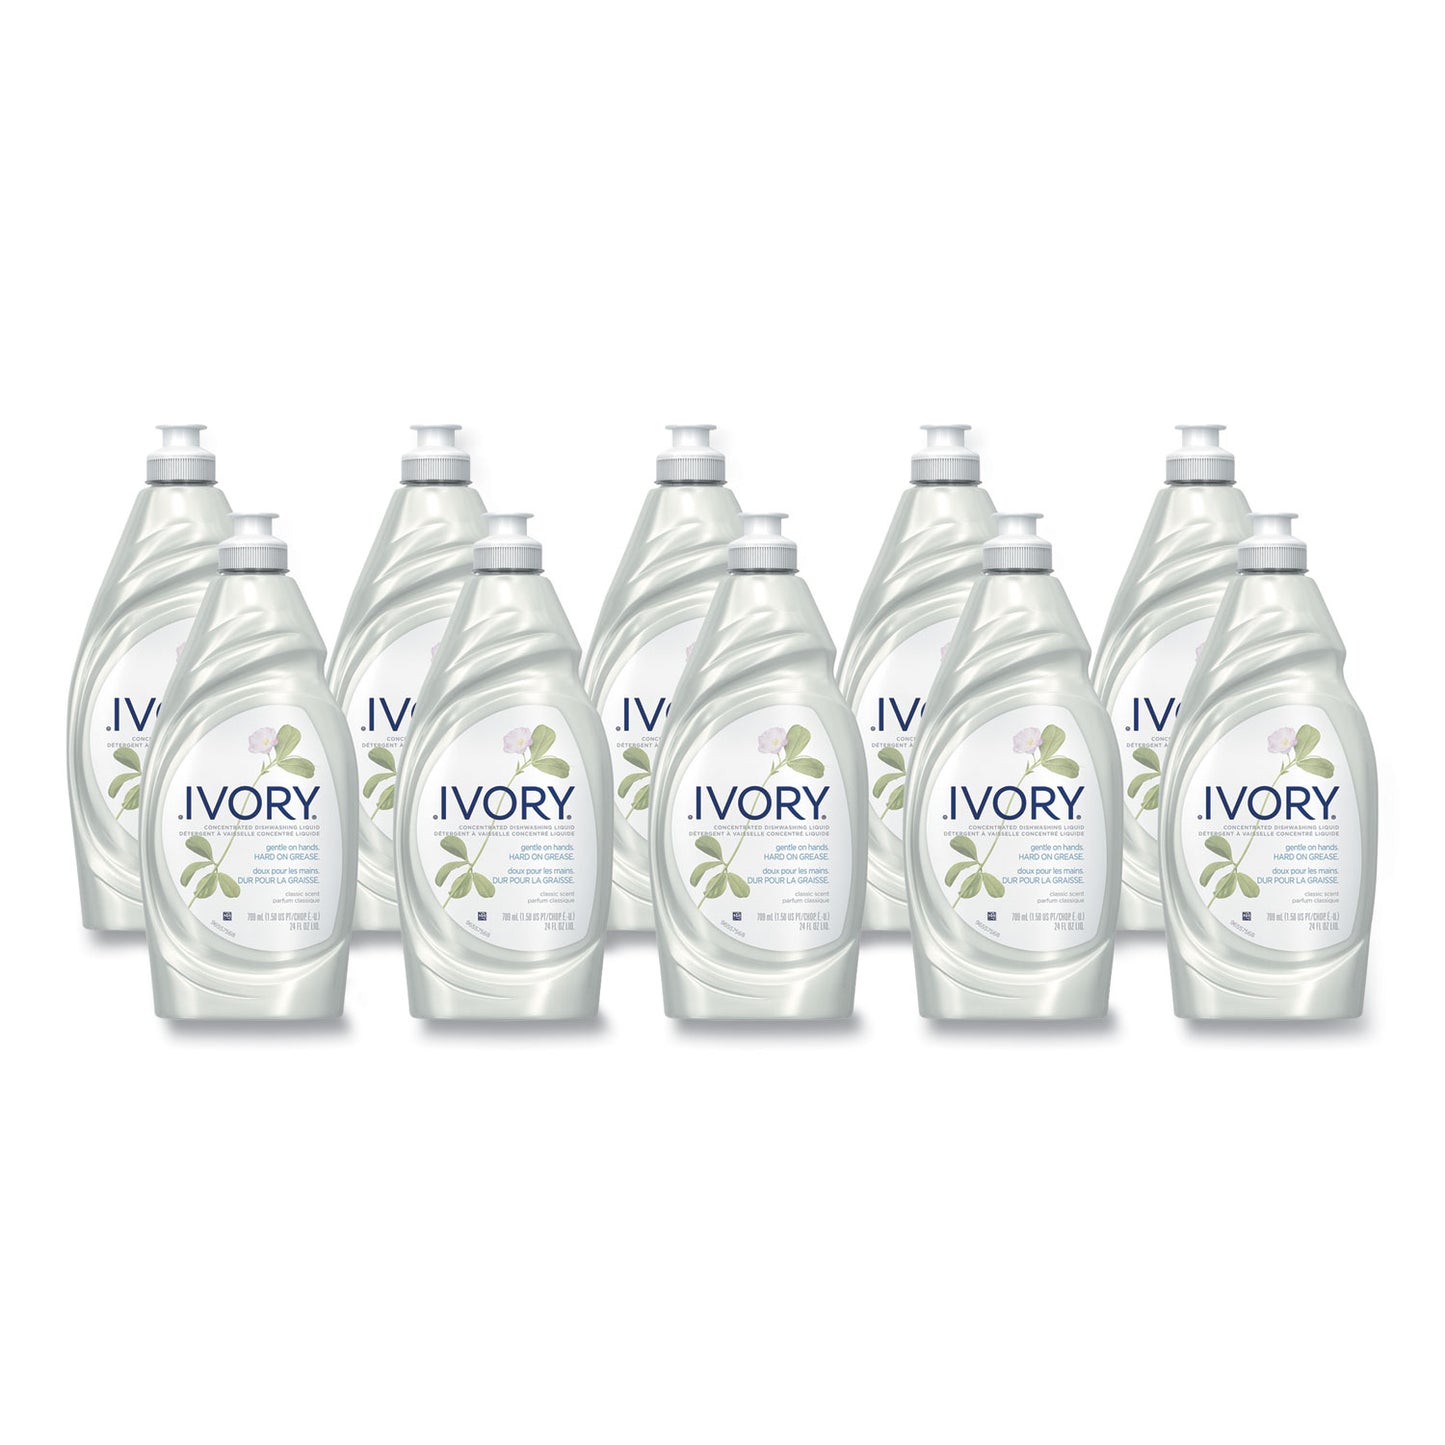 PGA Ivory Liquid Dish Detergent (10 Pack)